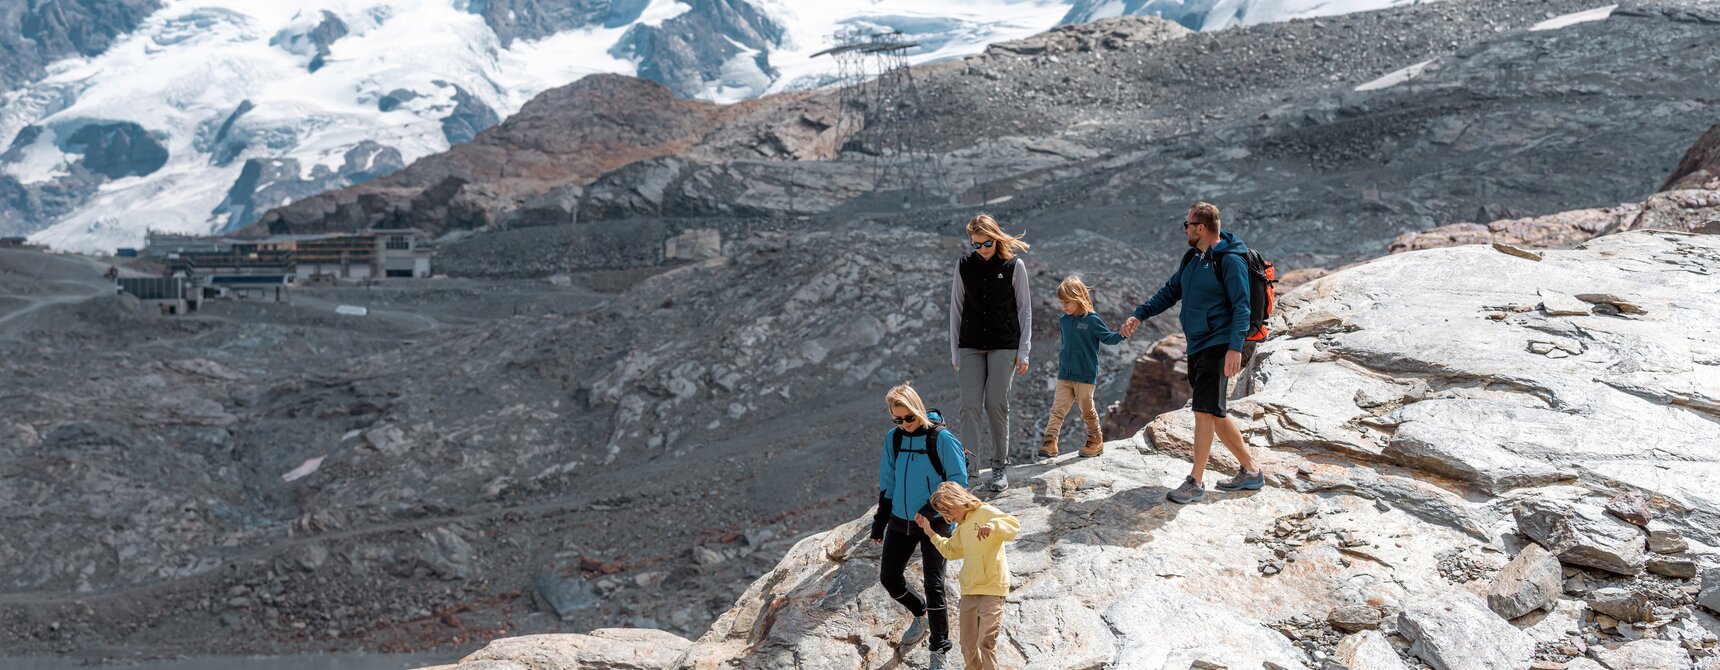 Famiglia escursionismo giù per le rocce, sullo sfondo Breithorn e Dufourspitze | © basic_home